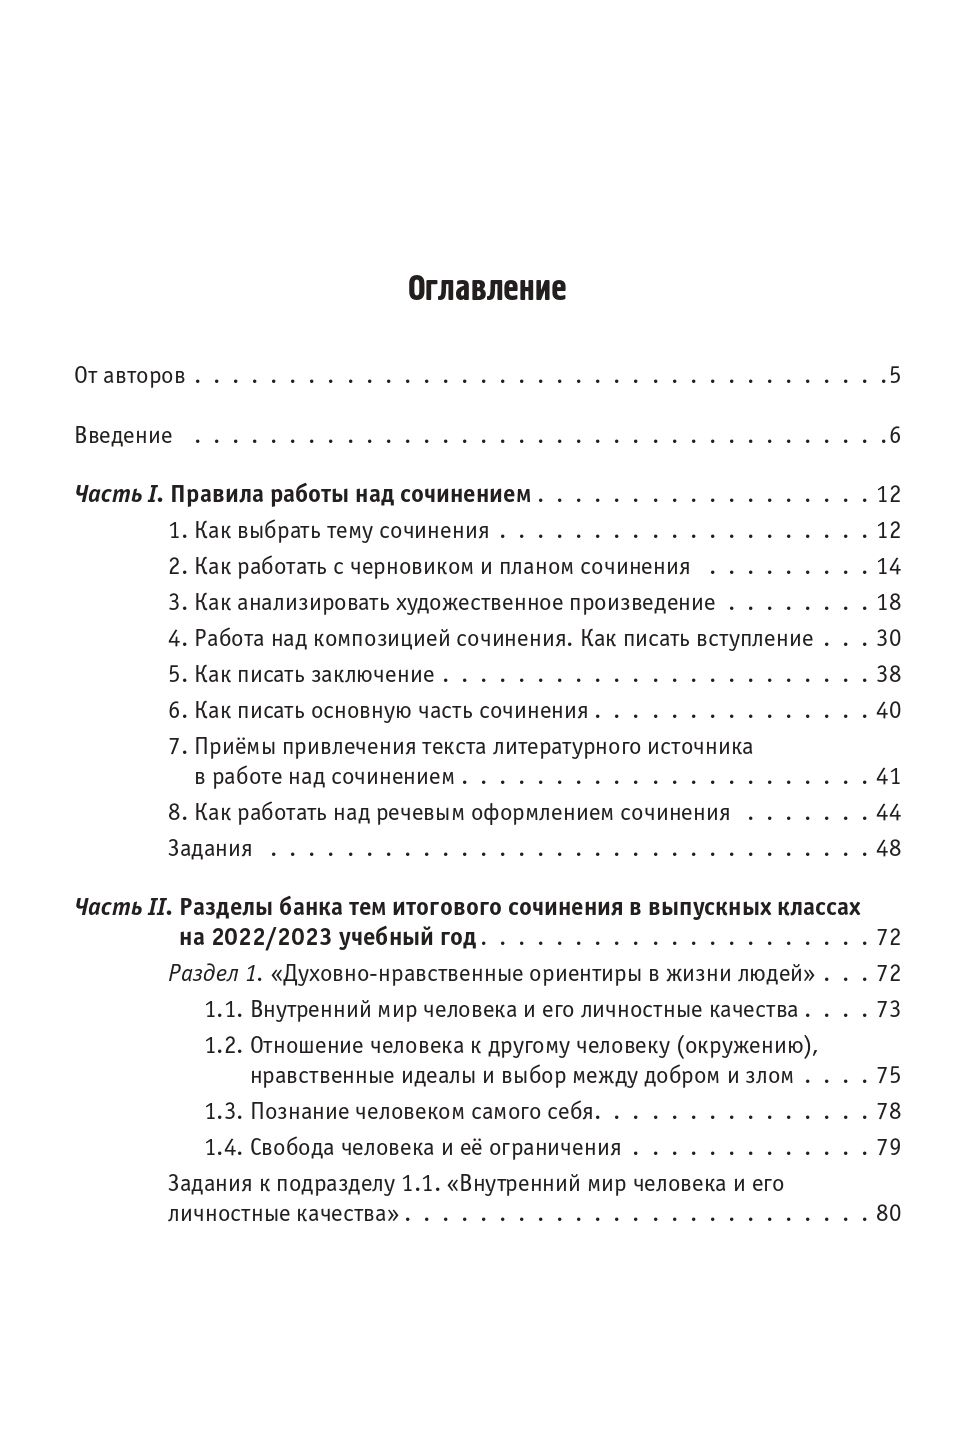 Русский язык. Литература. Итоговое выпускное сочинение в 11-м классе